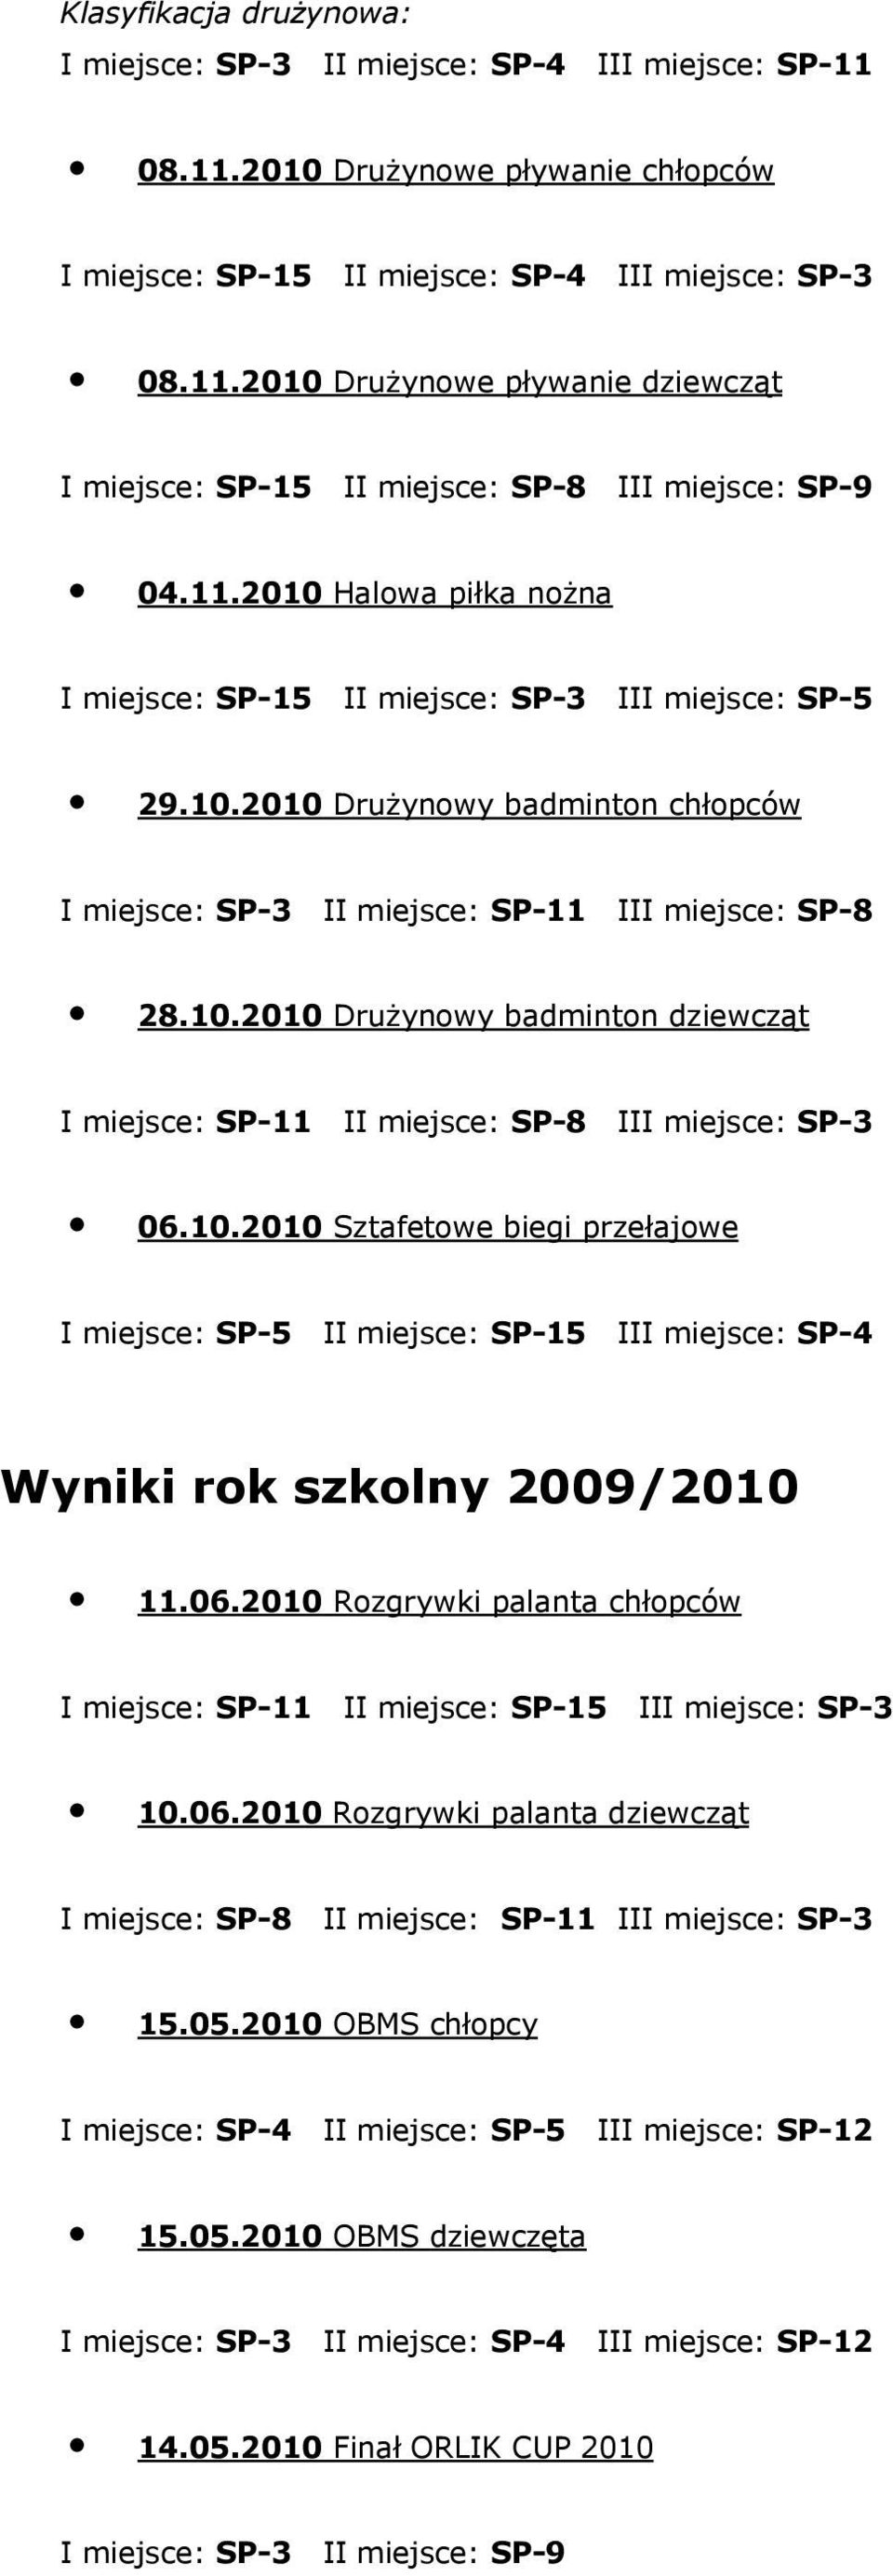 10.2010 Sztafetowe biegi przełajowe I miejsce: SP-5 II miejsce: SP-15 III miejsce: SP-4 Wyniki rok szkolny 2009/2010 11.06.